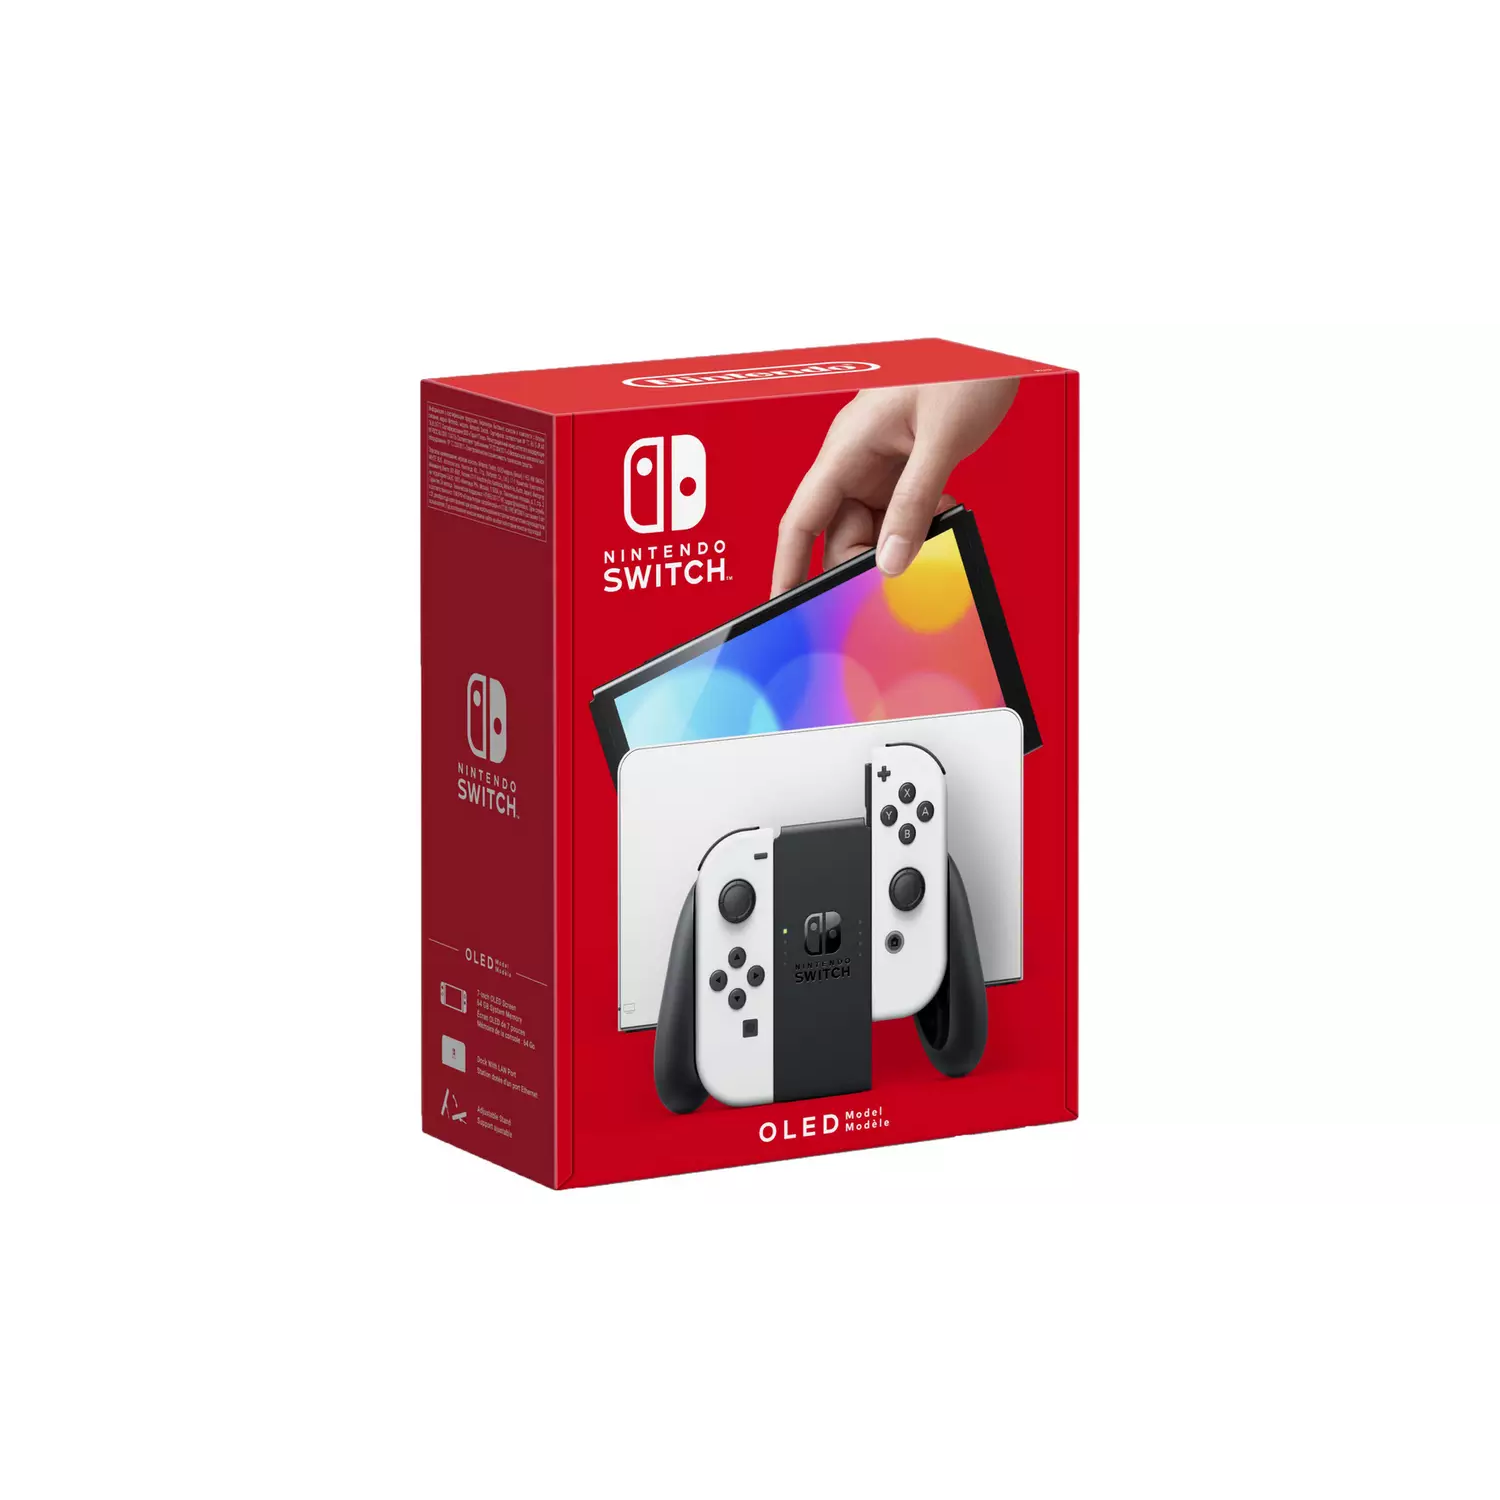 Nintendo Switch OLED Model – White